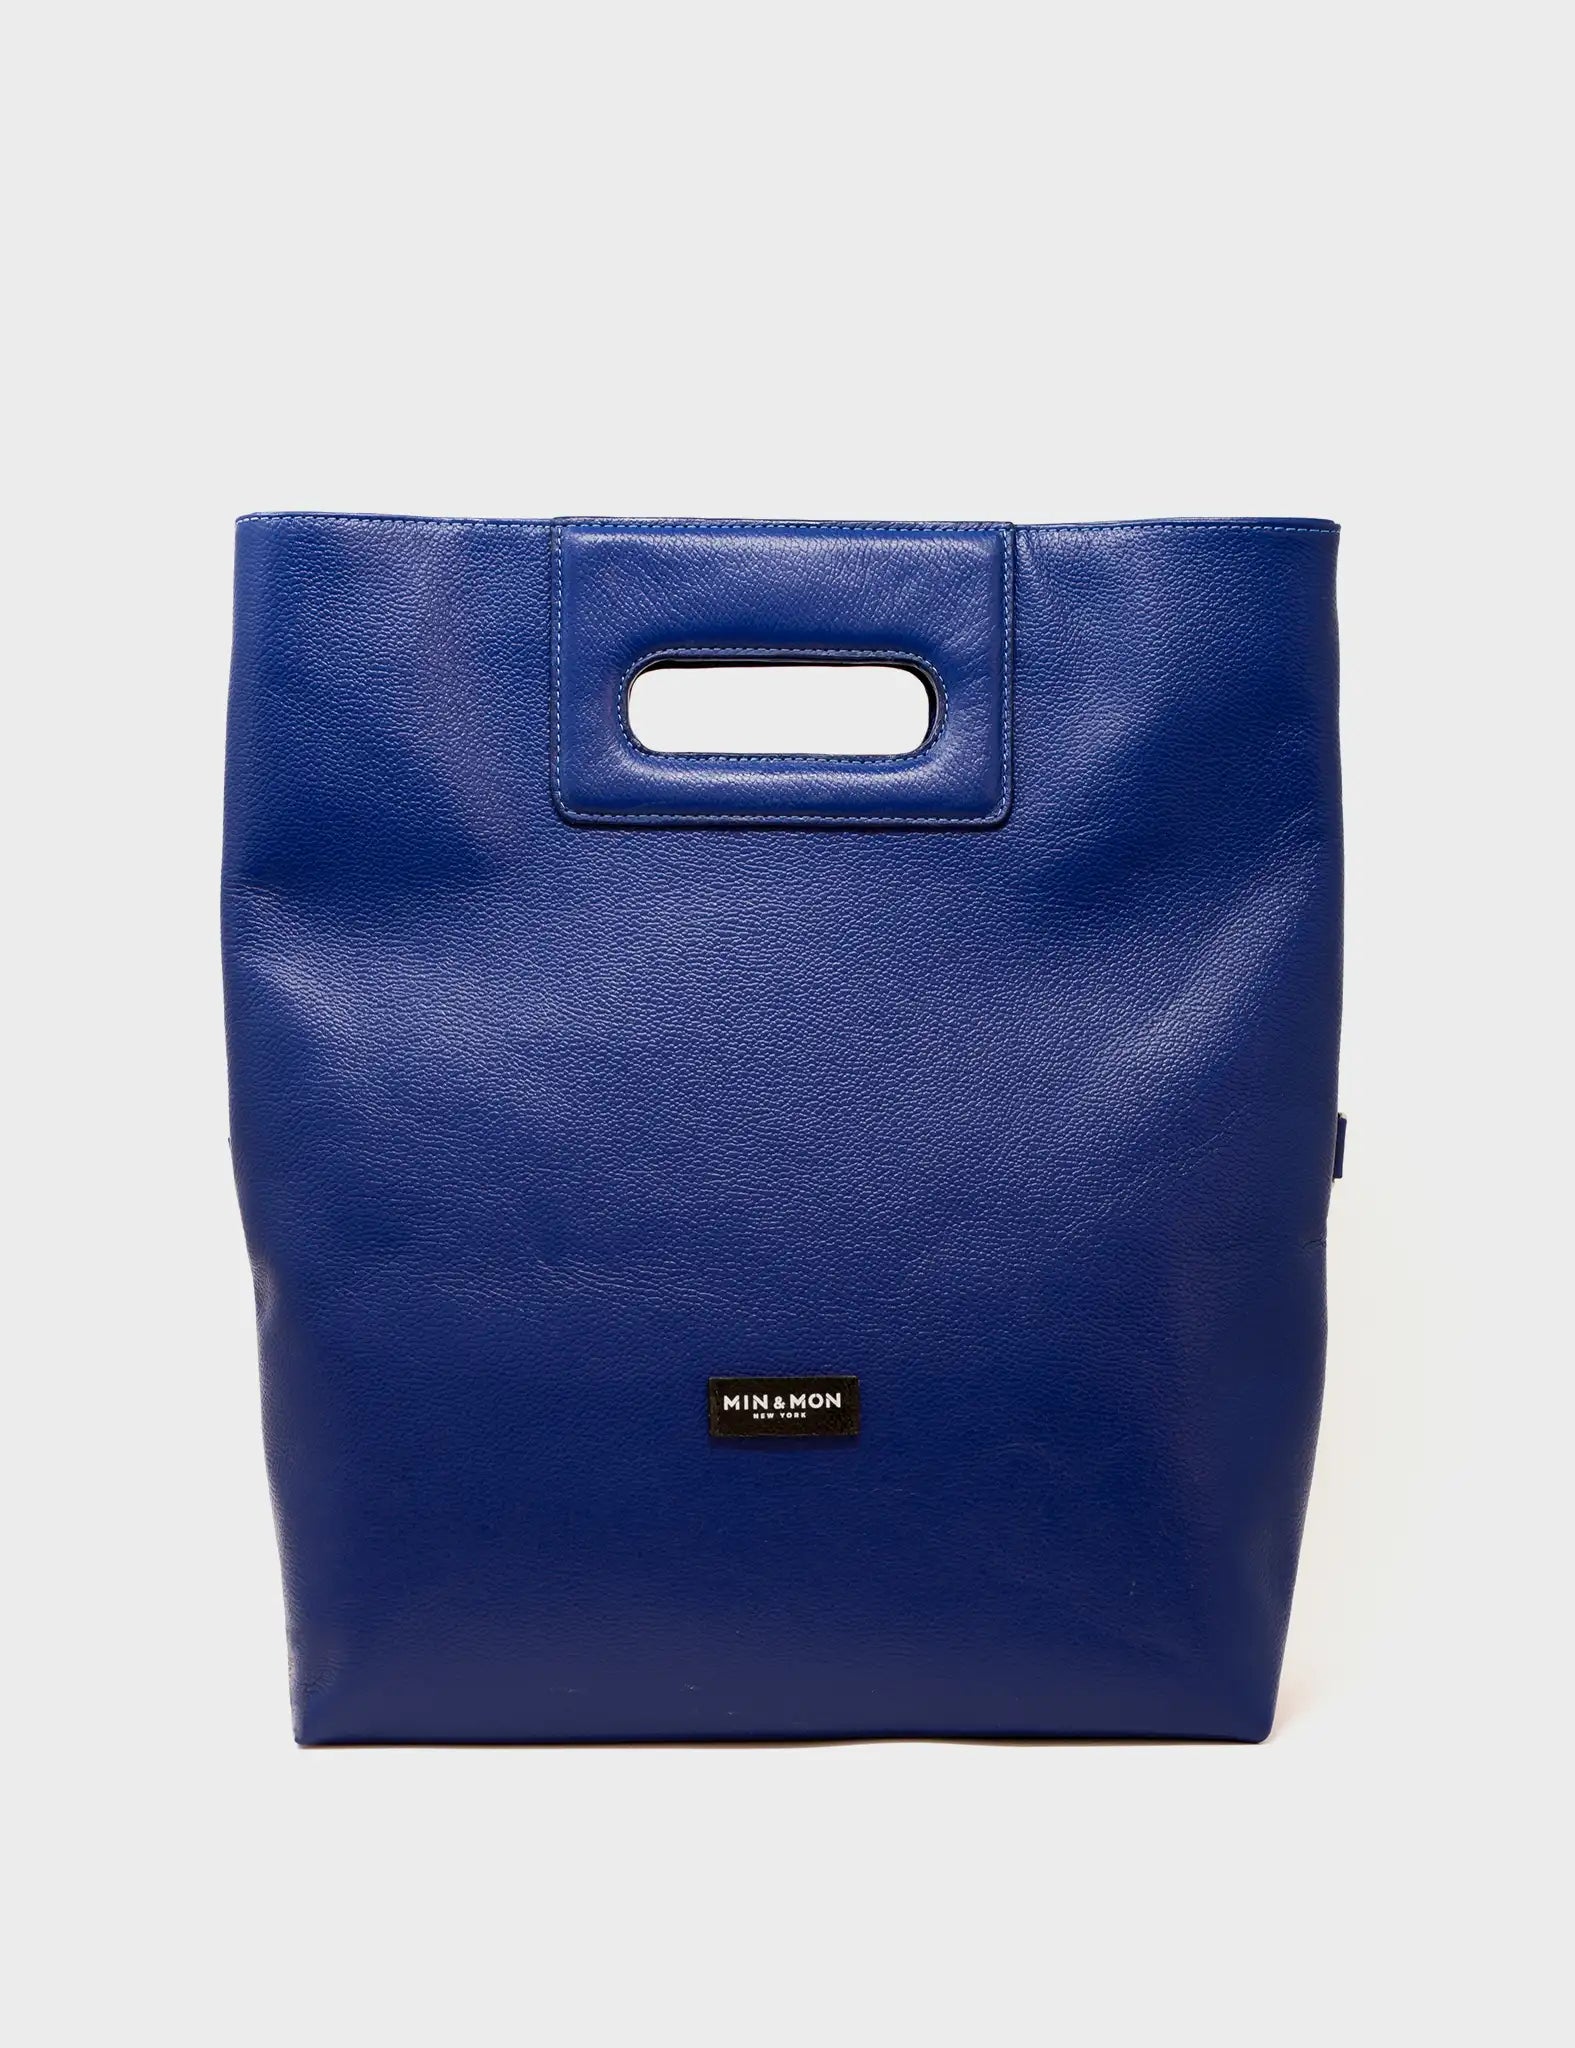 Convertible Royal Blue Leather Handbag - Utopian Landscape  - Back